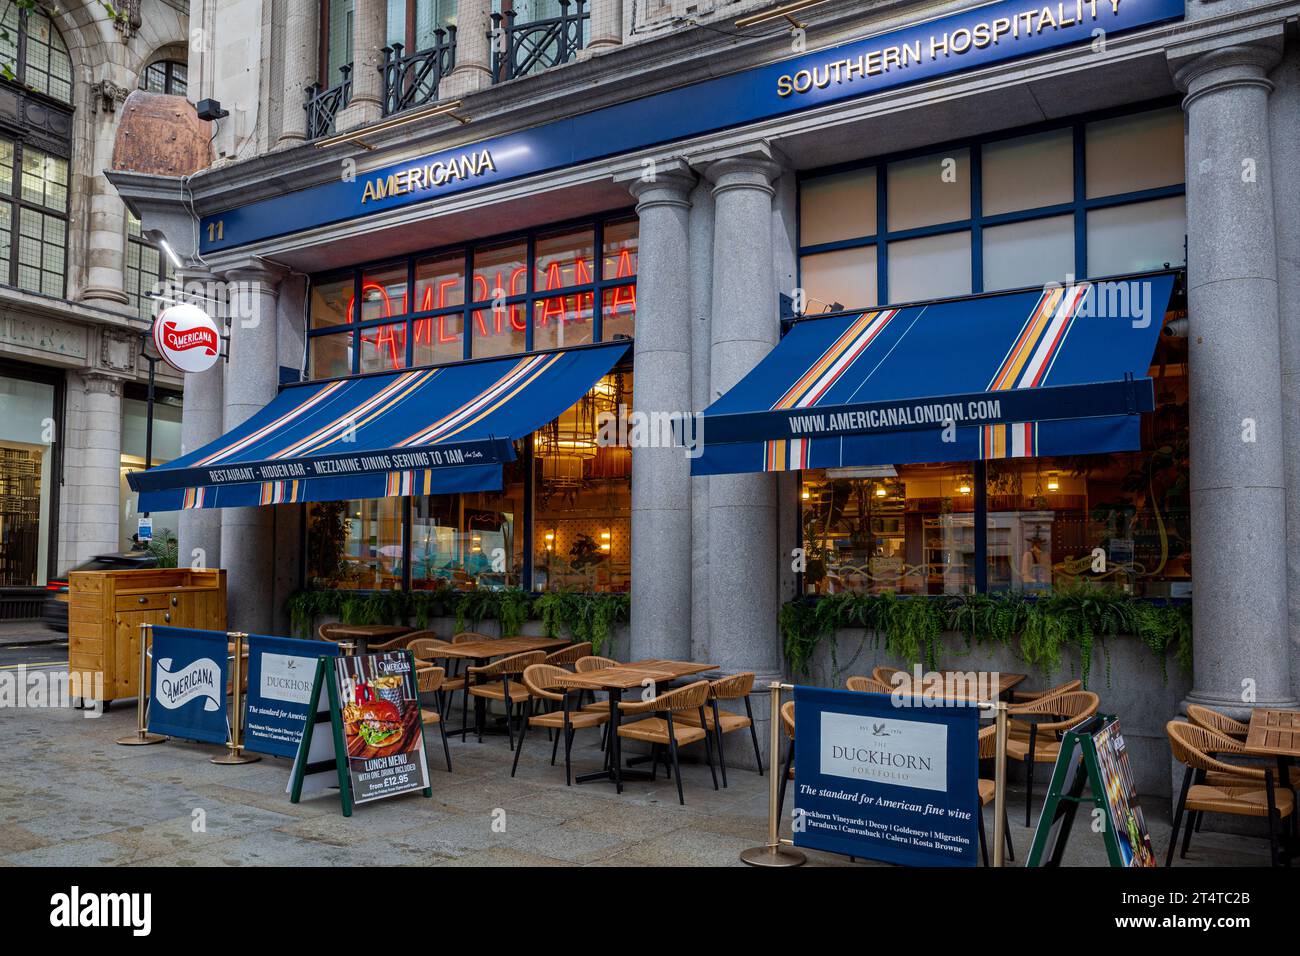 Ristorante americana di Londra. Il ristorante americana all'11 Haymarket, Londra, ospitalità del sud e cibo soul nel cuore di Londra. Fondata nel 2023. Foto Stock